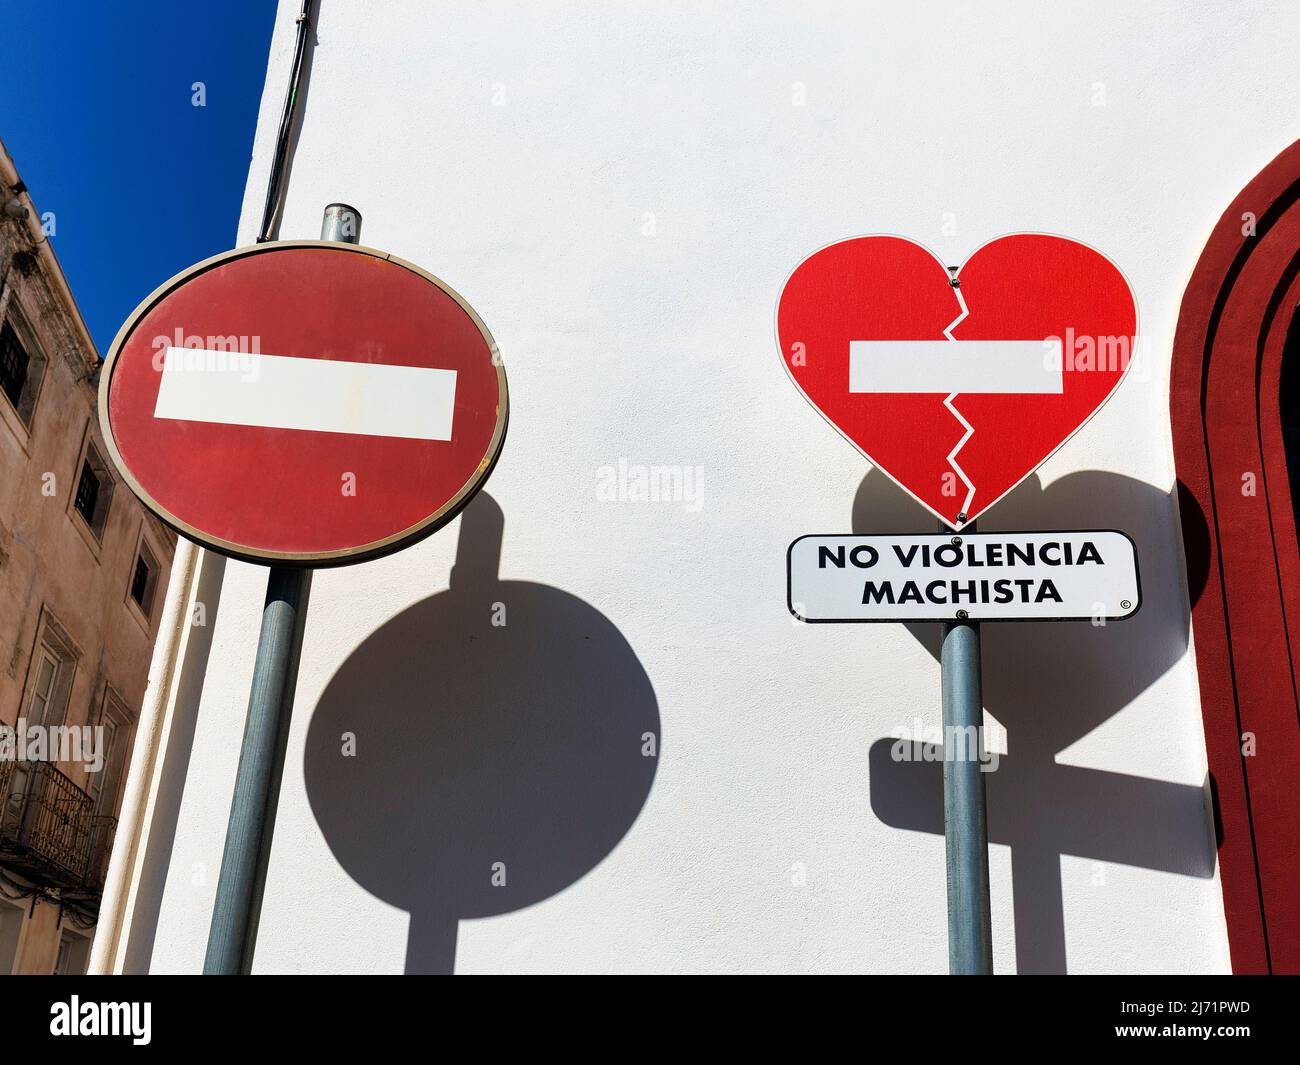 Zwei Verkehrsschilder werfen Schatten, Einfahrt verboten, gebrochenes Herz, Aufschrift No Violencia Machista in einer Kampagne gegen haeusliche Foto Stock